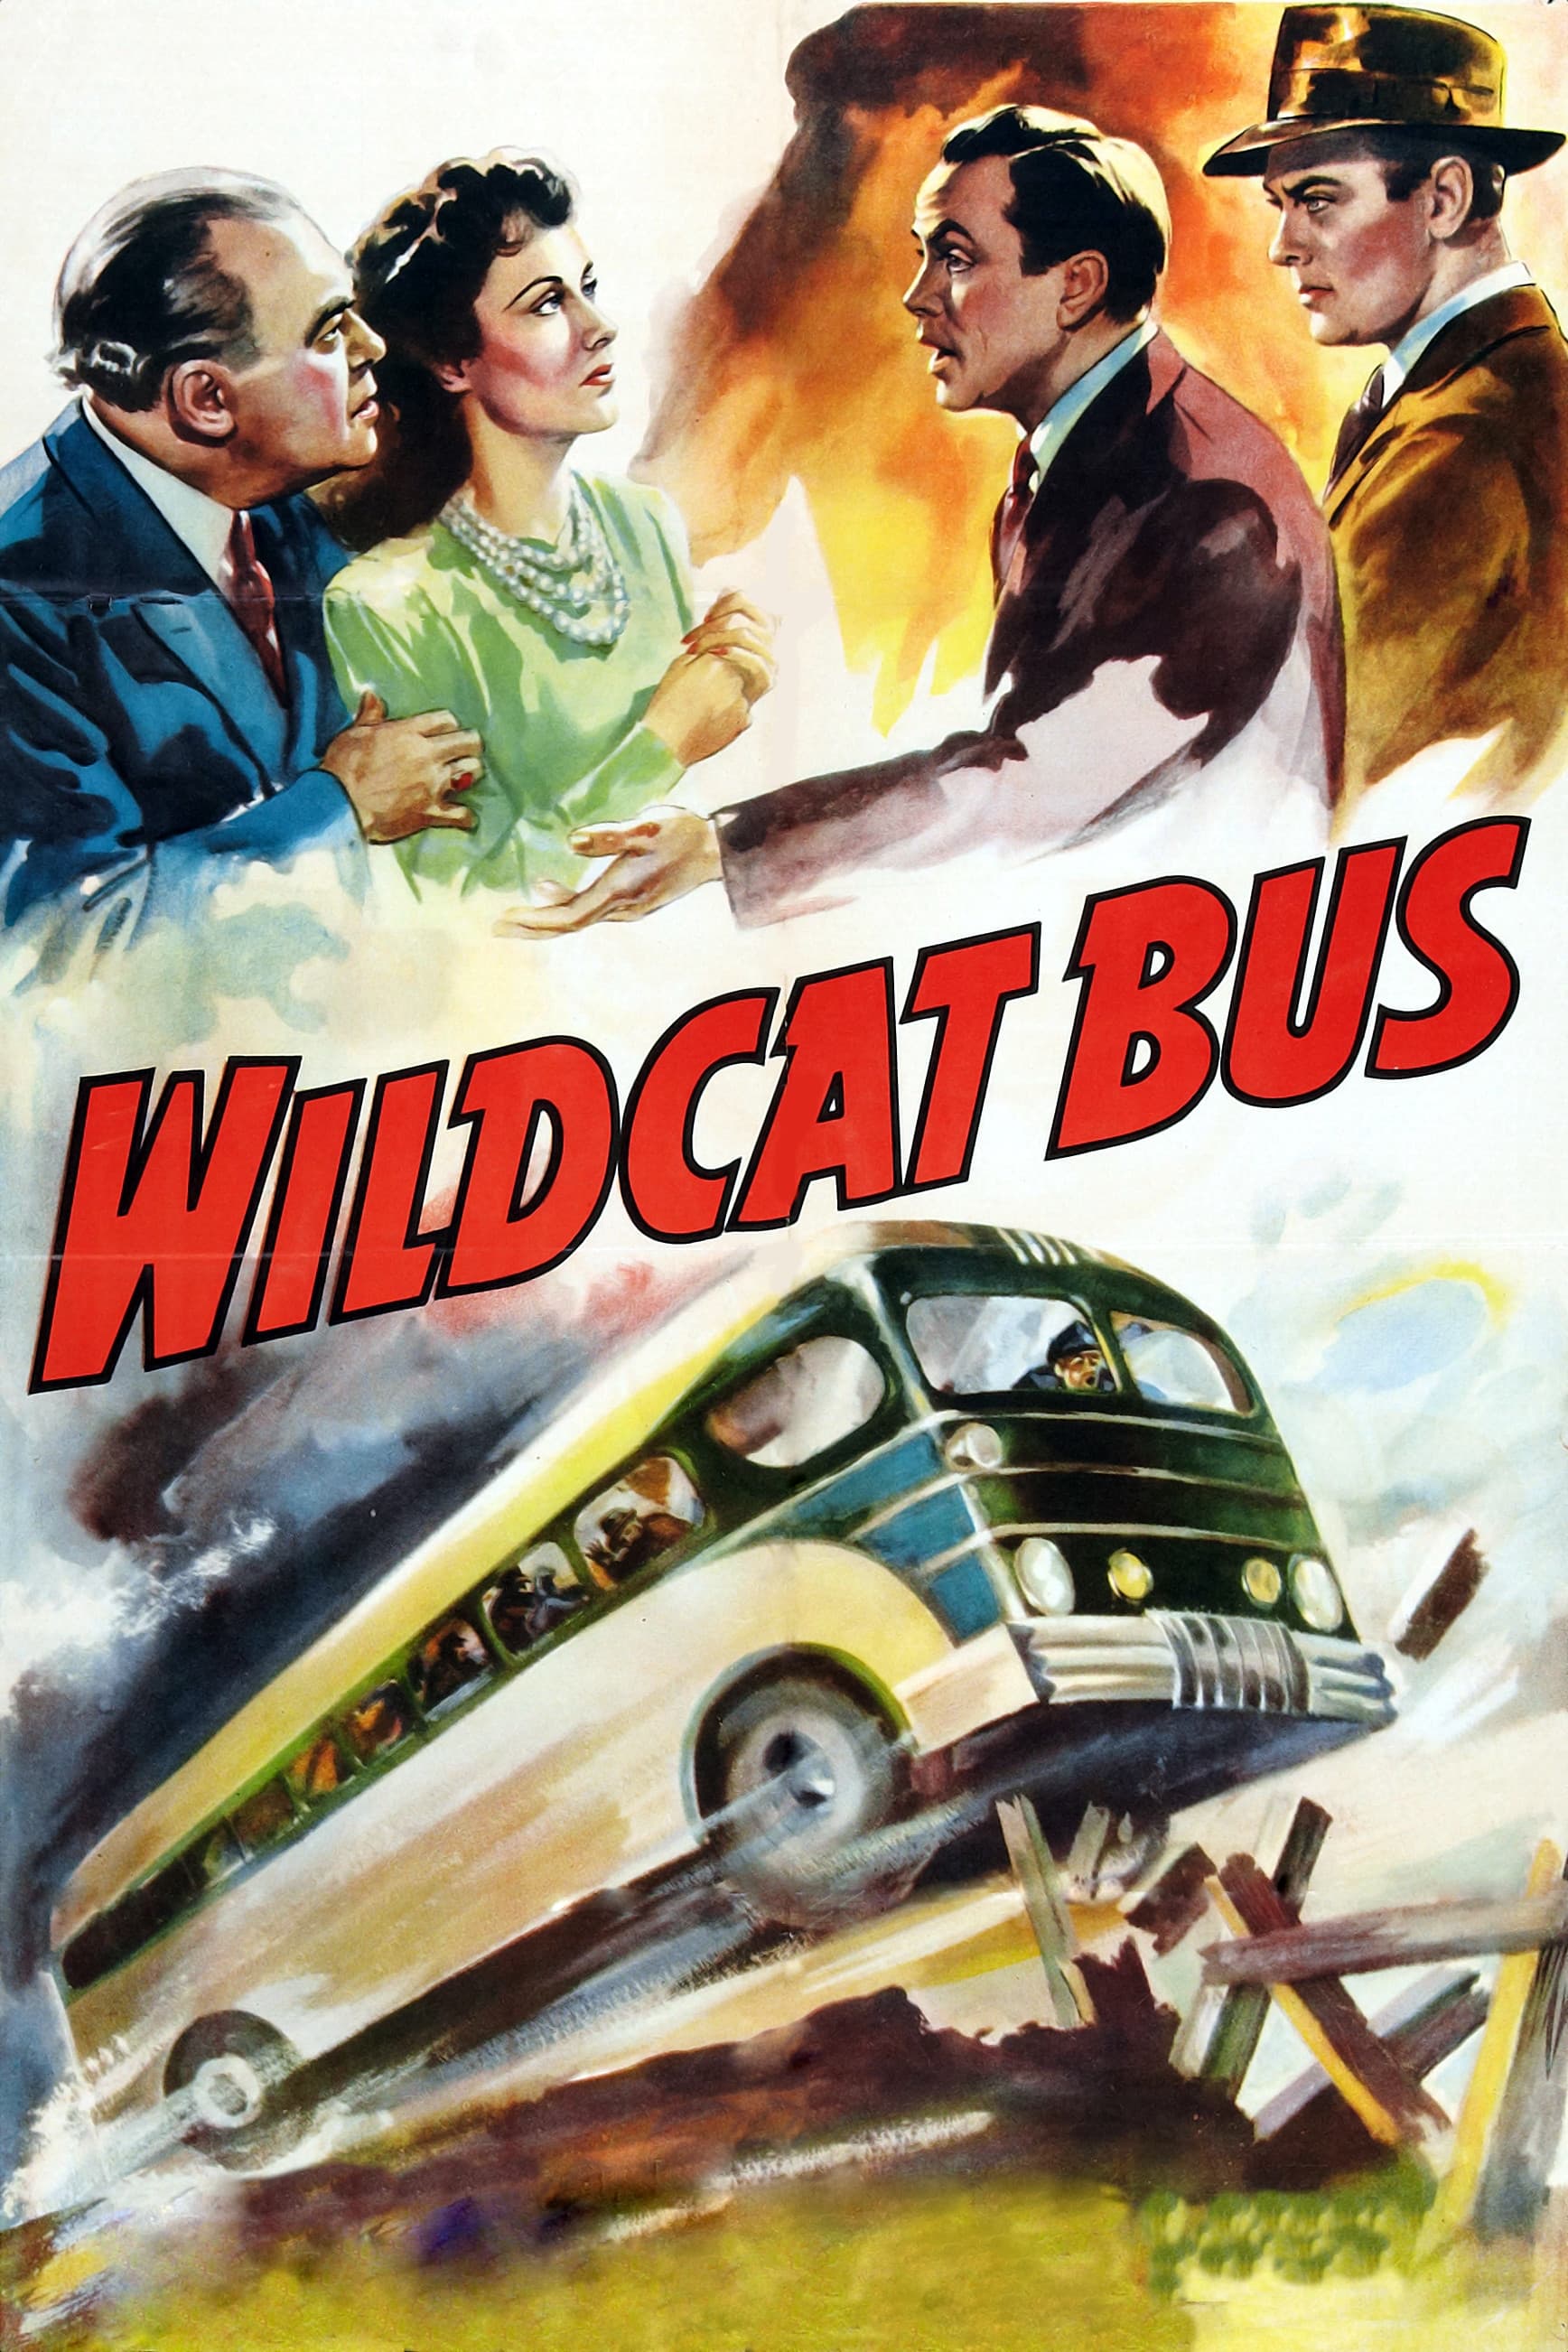 Wildcat Bus